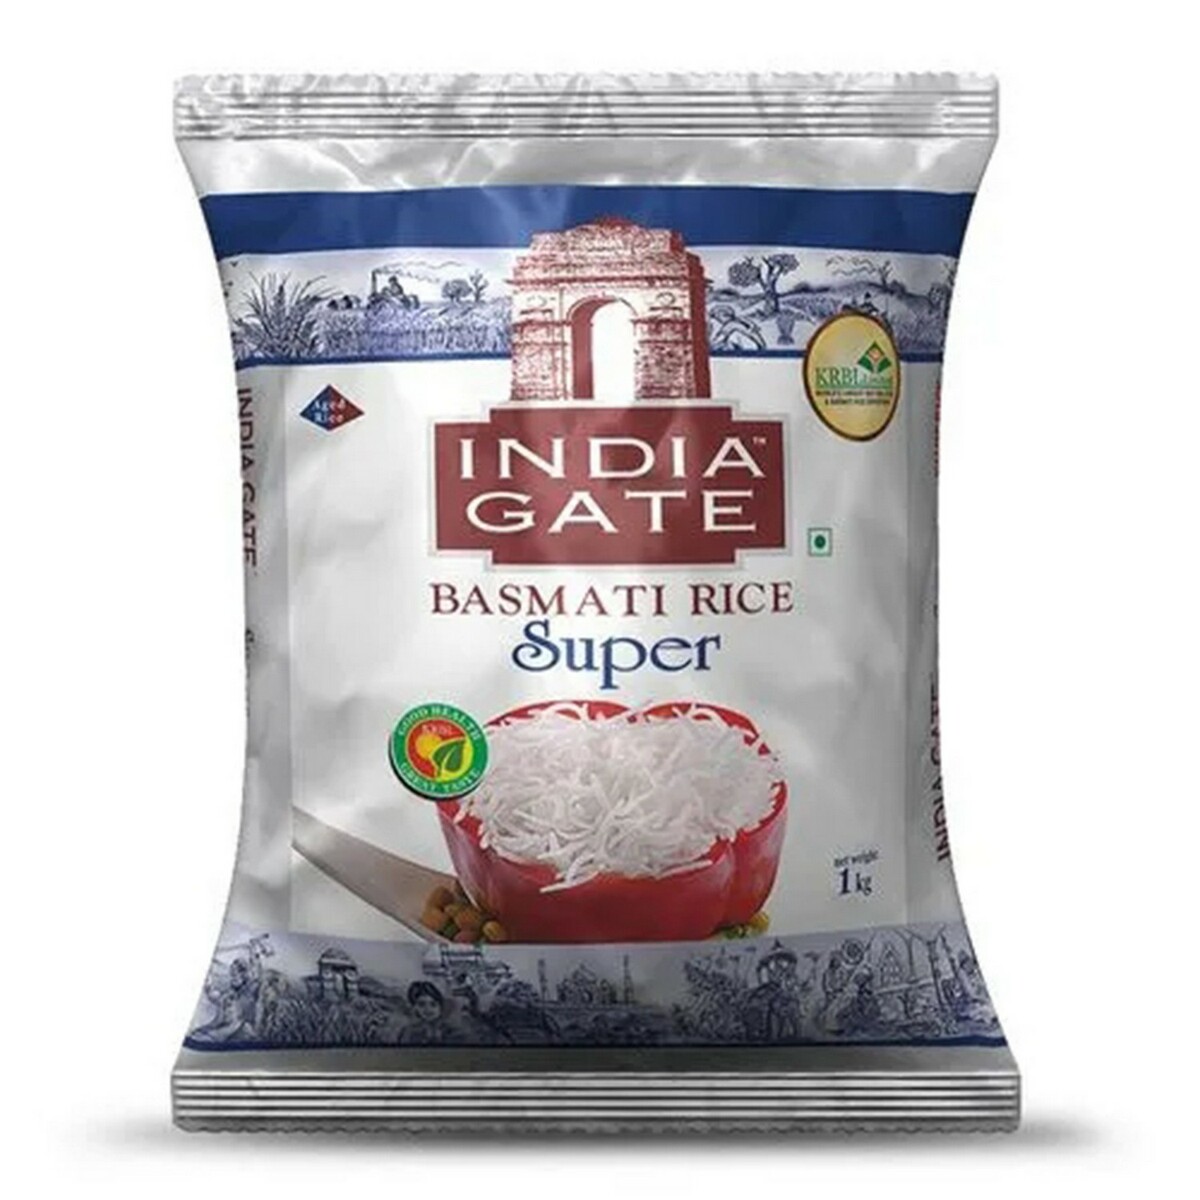 India Gate Basmati Rice Super 1kg